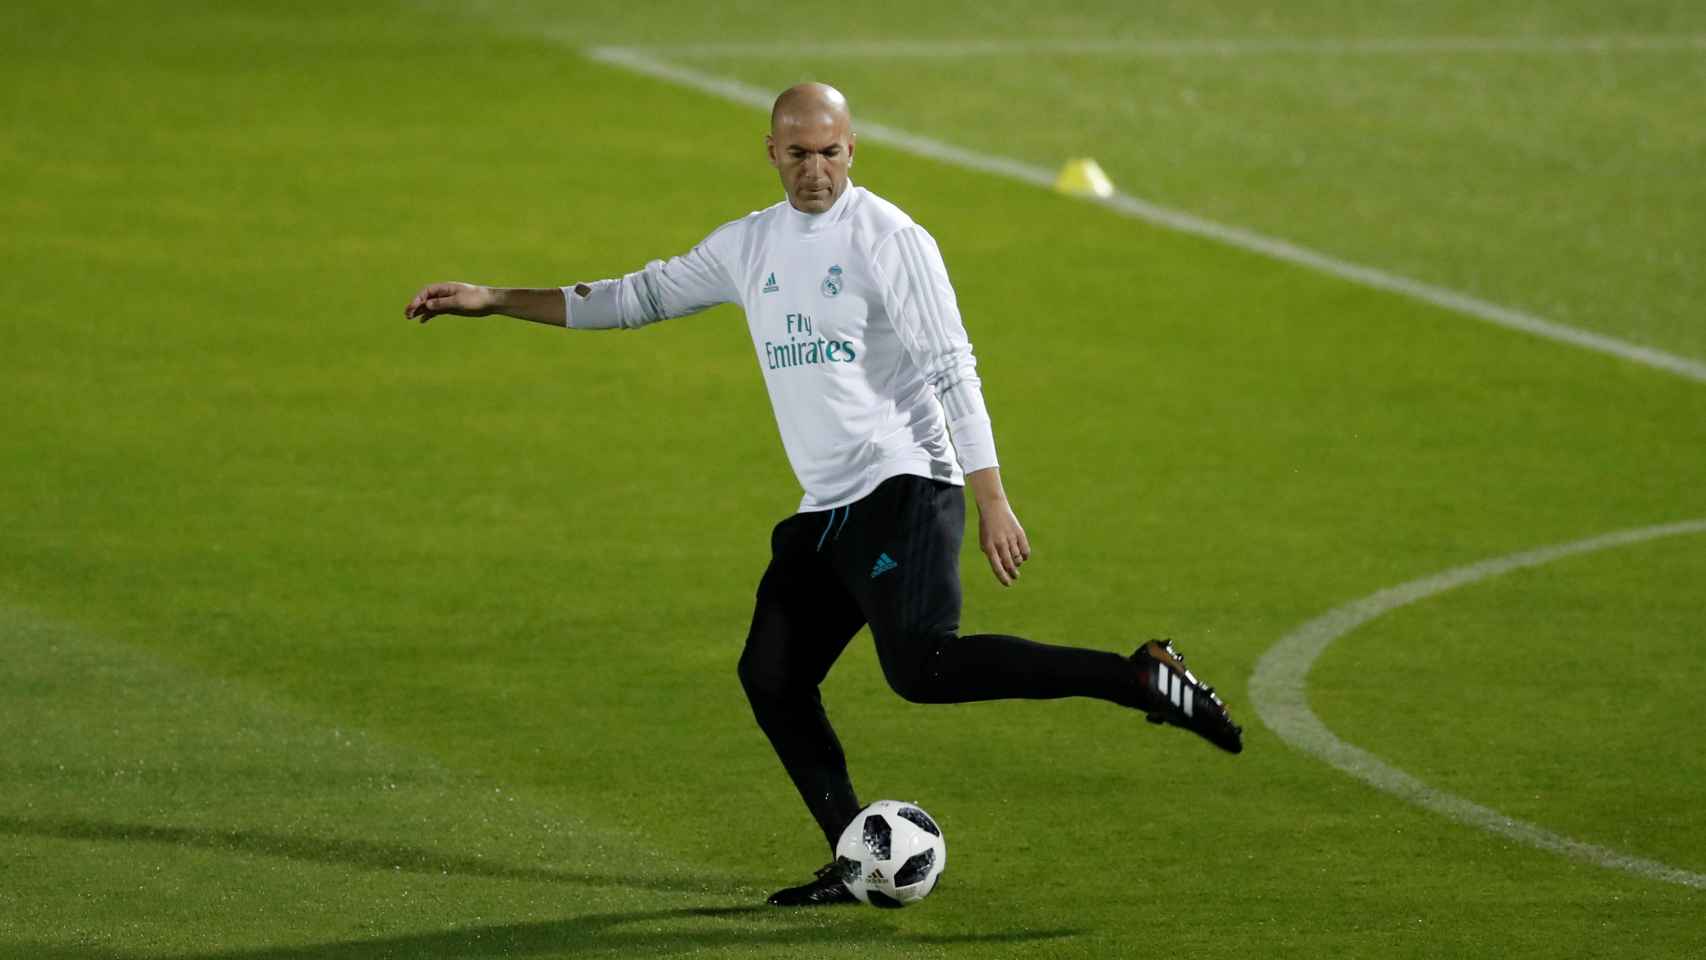 Zidane golpea la pelota durante un entrenamiento.